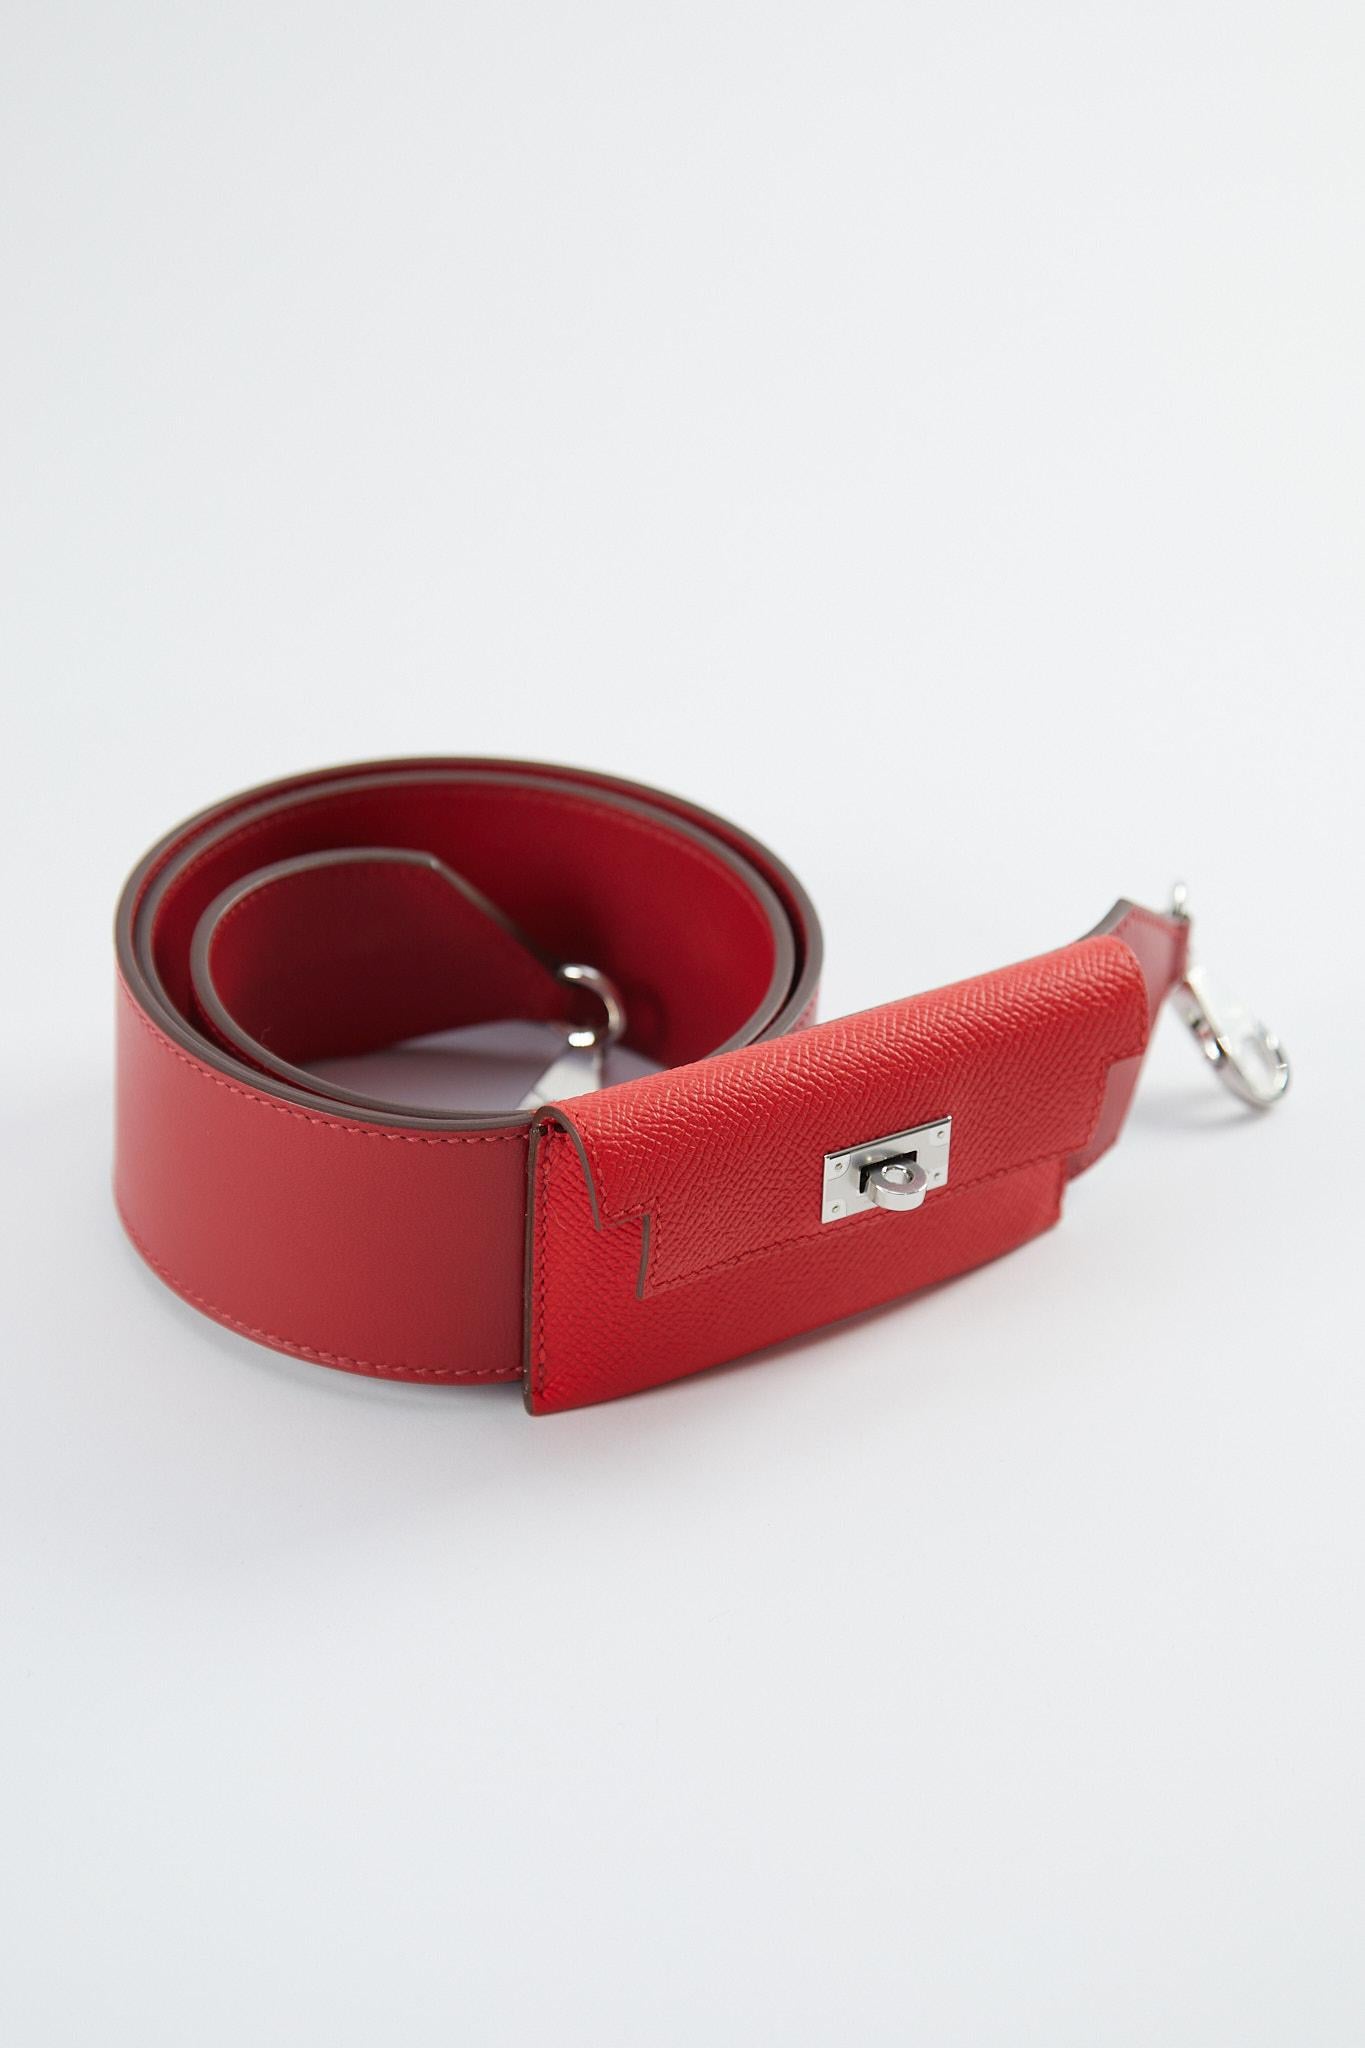 Hermès Kelly Pocket Strap 105cm en Rouge Casaque & Tomate

Cuir Epsom et Swift avec matériel Palladium

Y Timbre / Pas de reçu 

La sangle de 105 cm est la plus longue et permet à la plupart des gens de porter le sac de manière transversale ou à